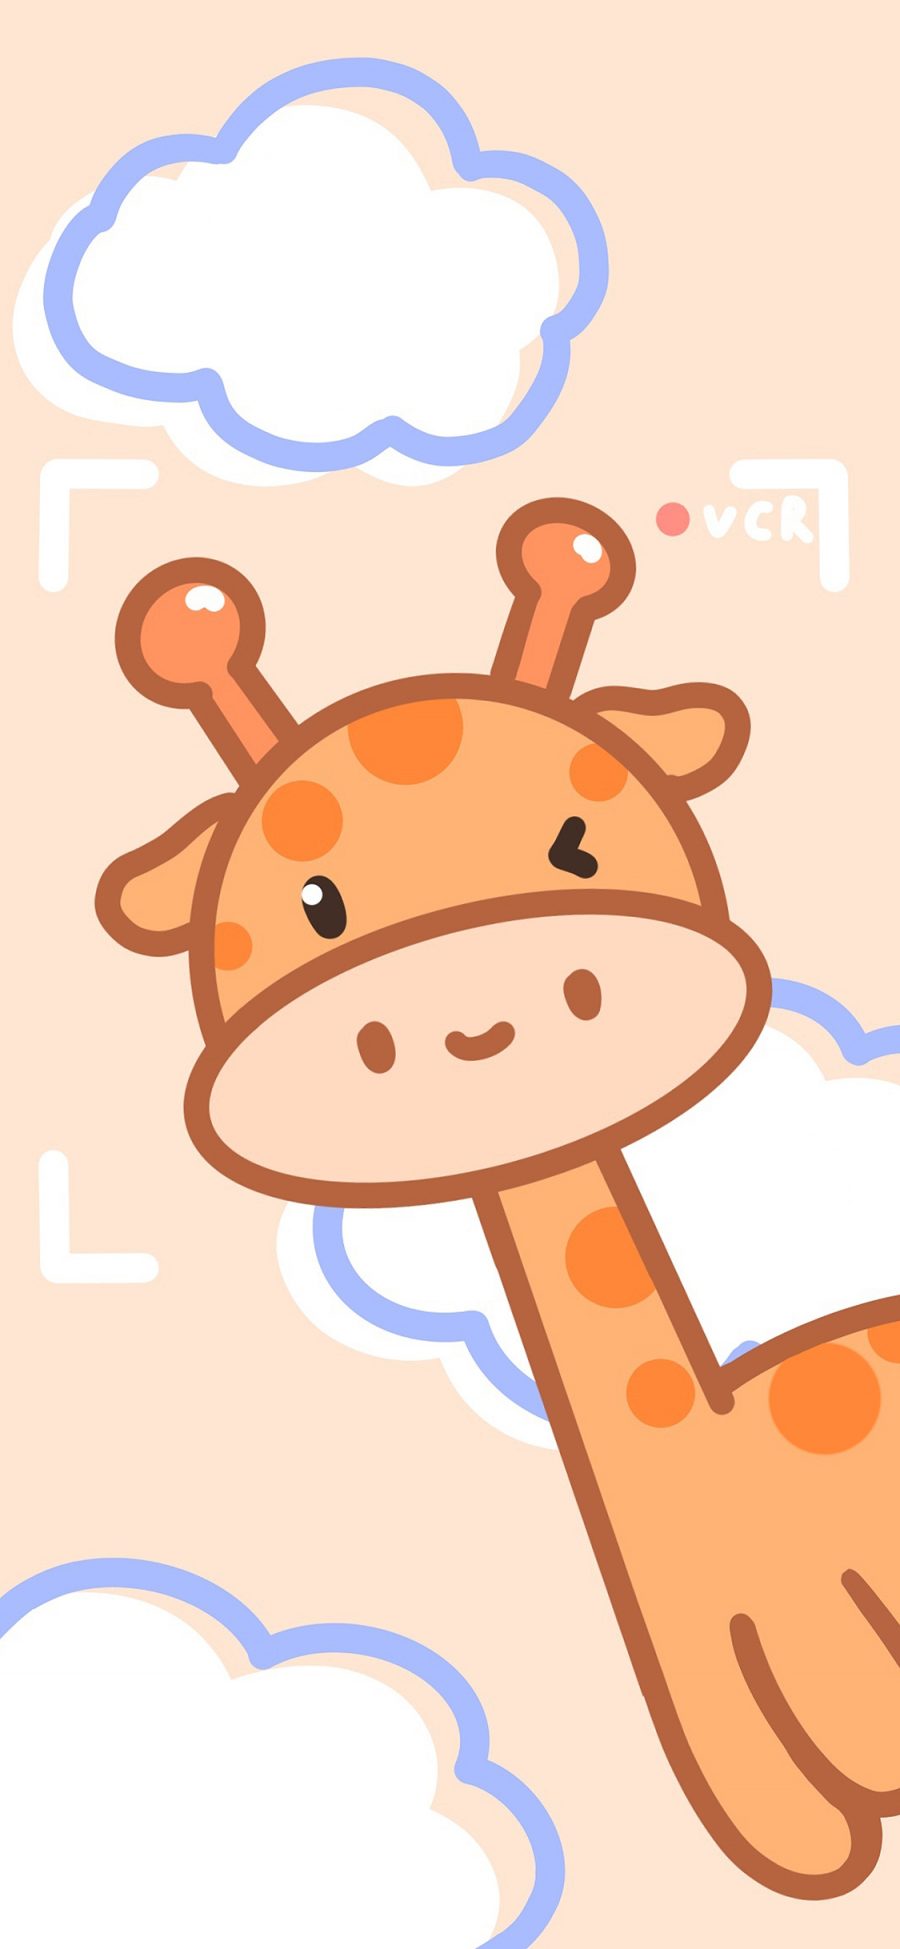 [2436×1125]长颈鹿 可爱 卡通 云朵 苹果手机动漫壁纸图片